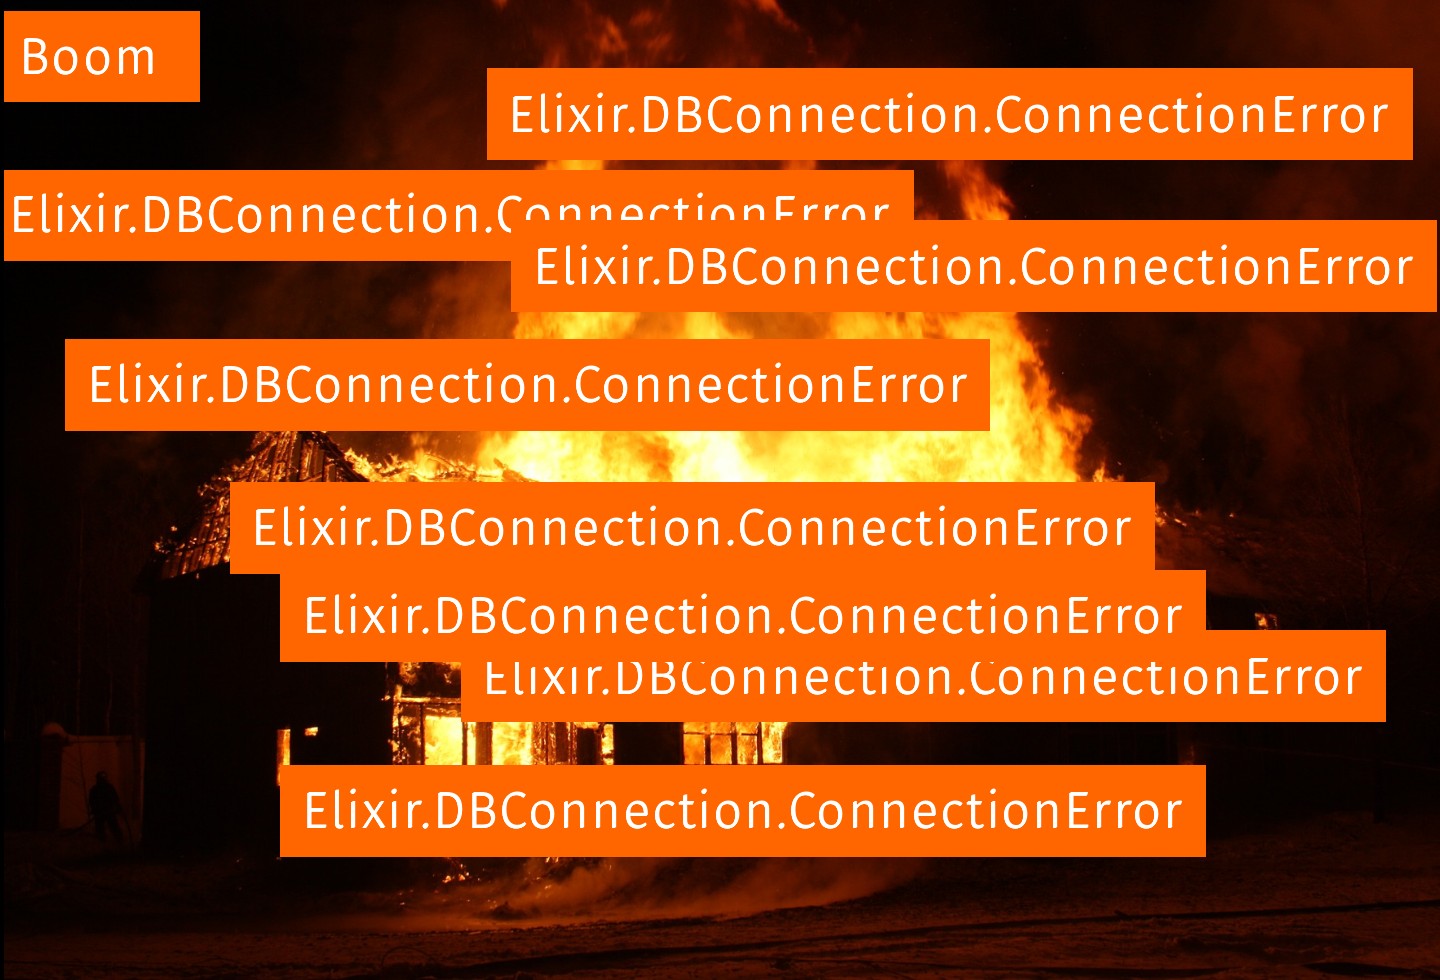 many errors pop up burning house